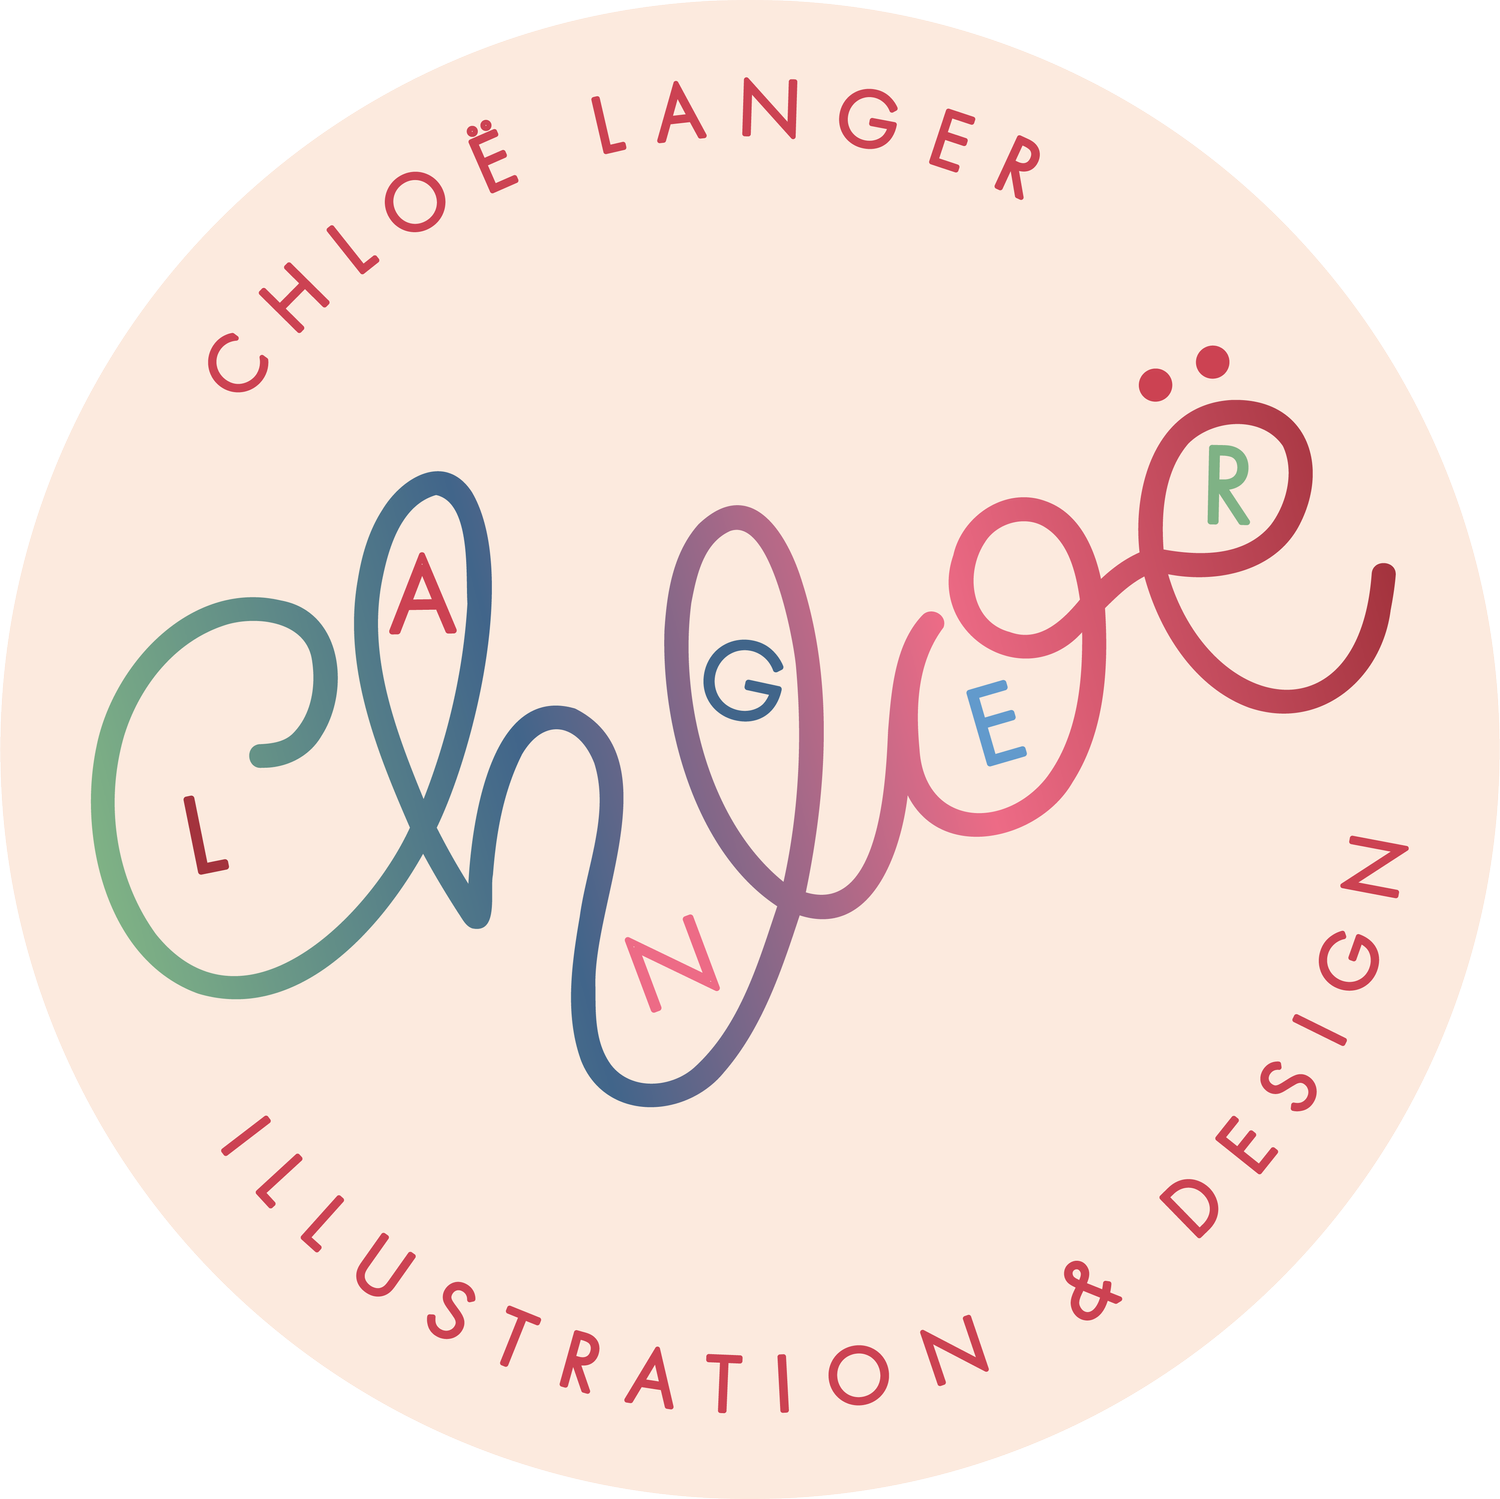 Chloë Langer